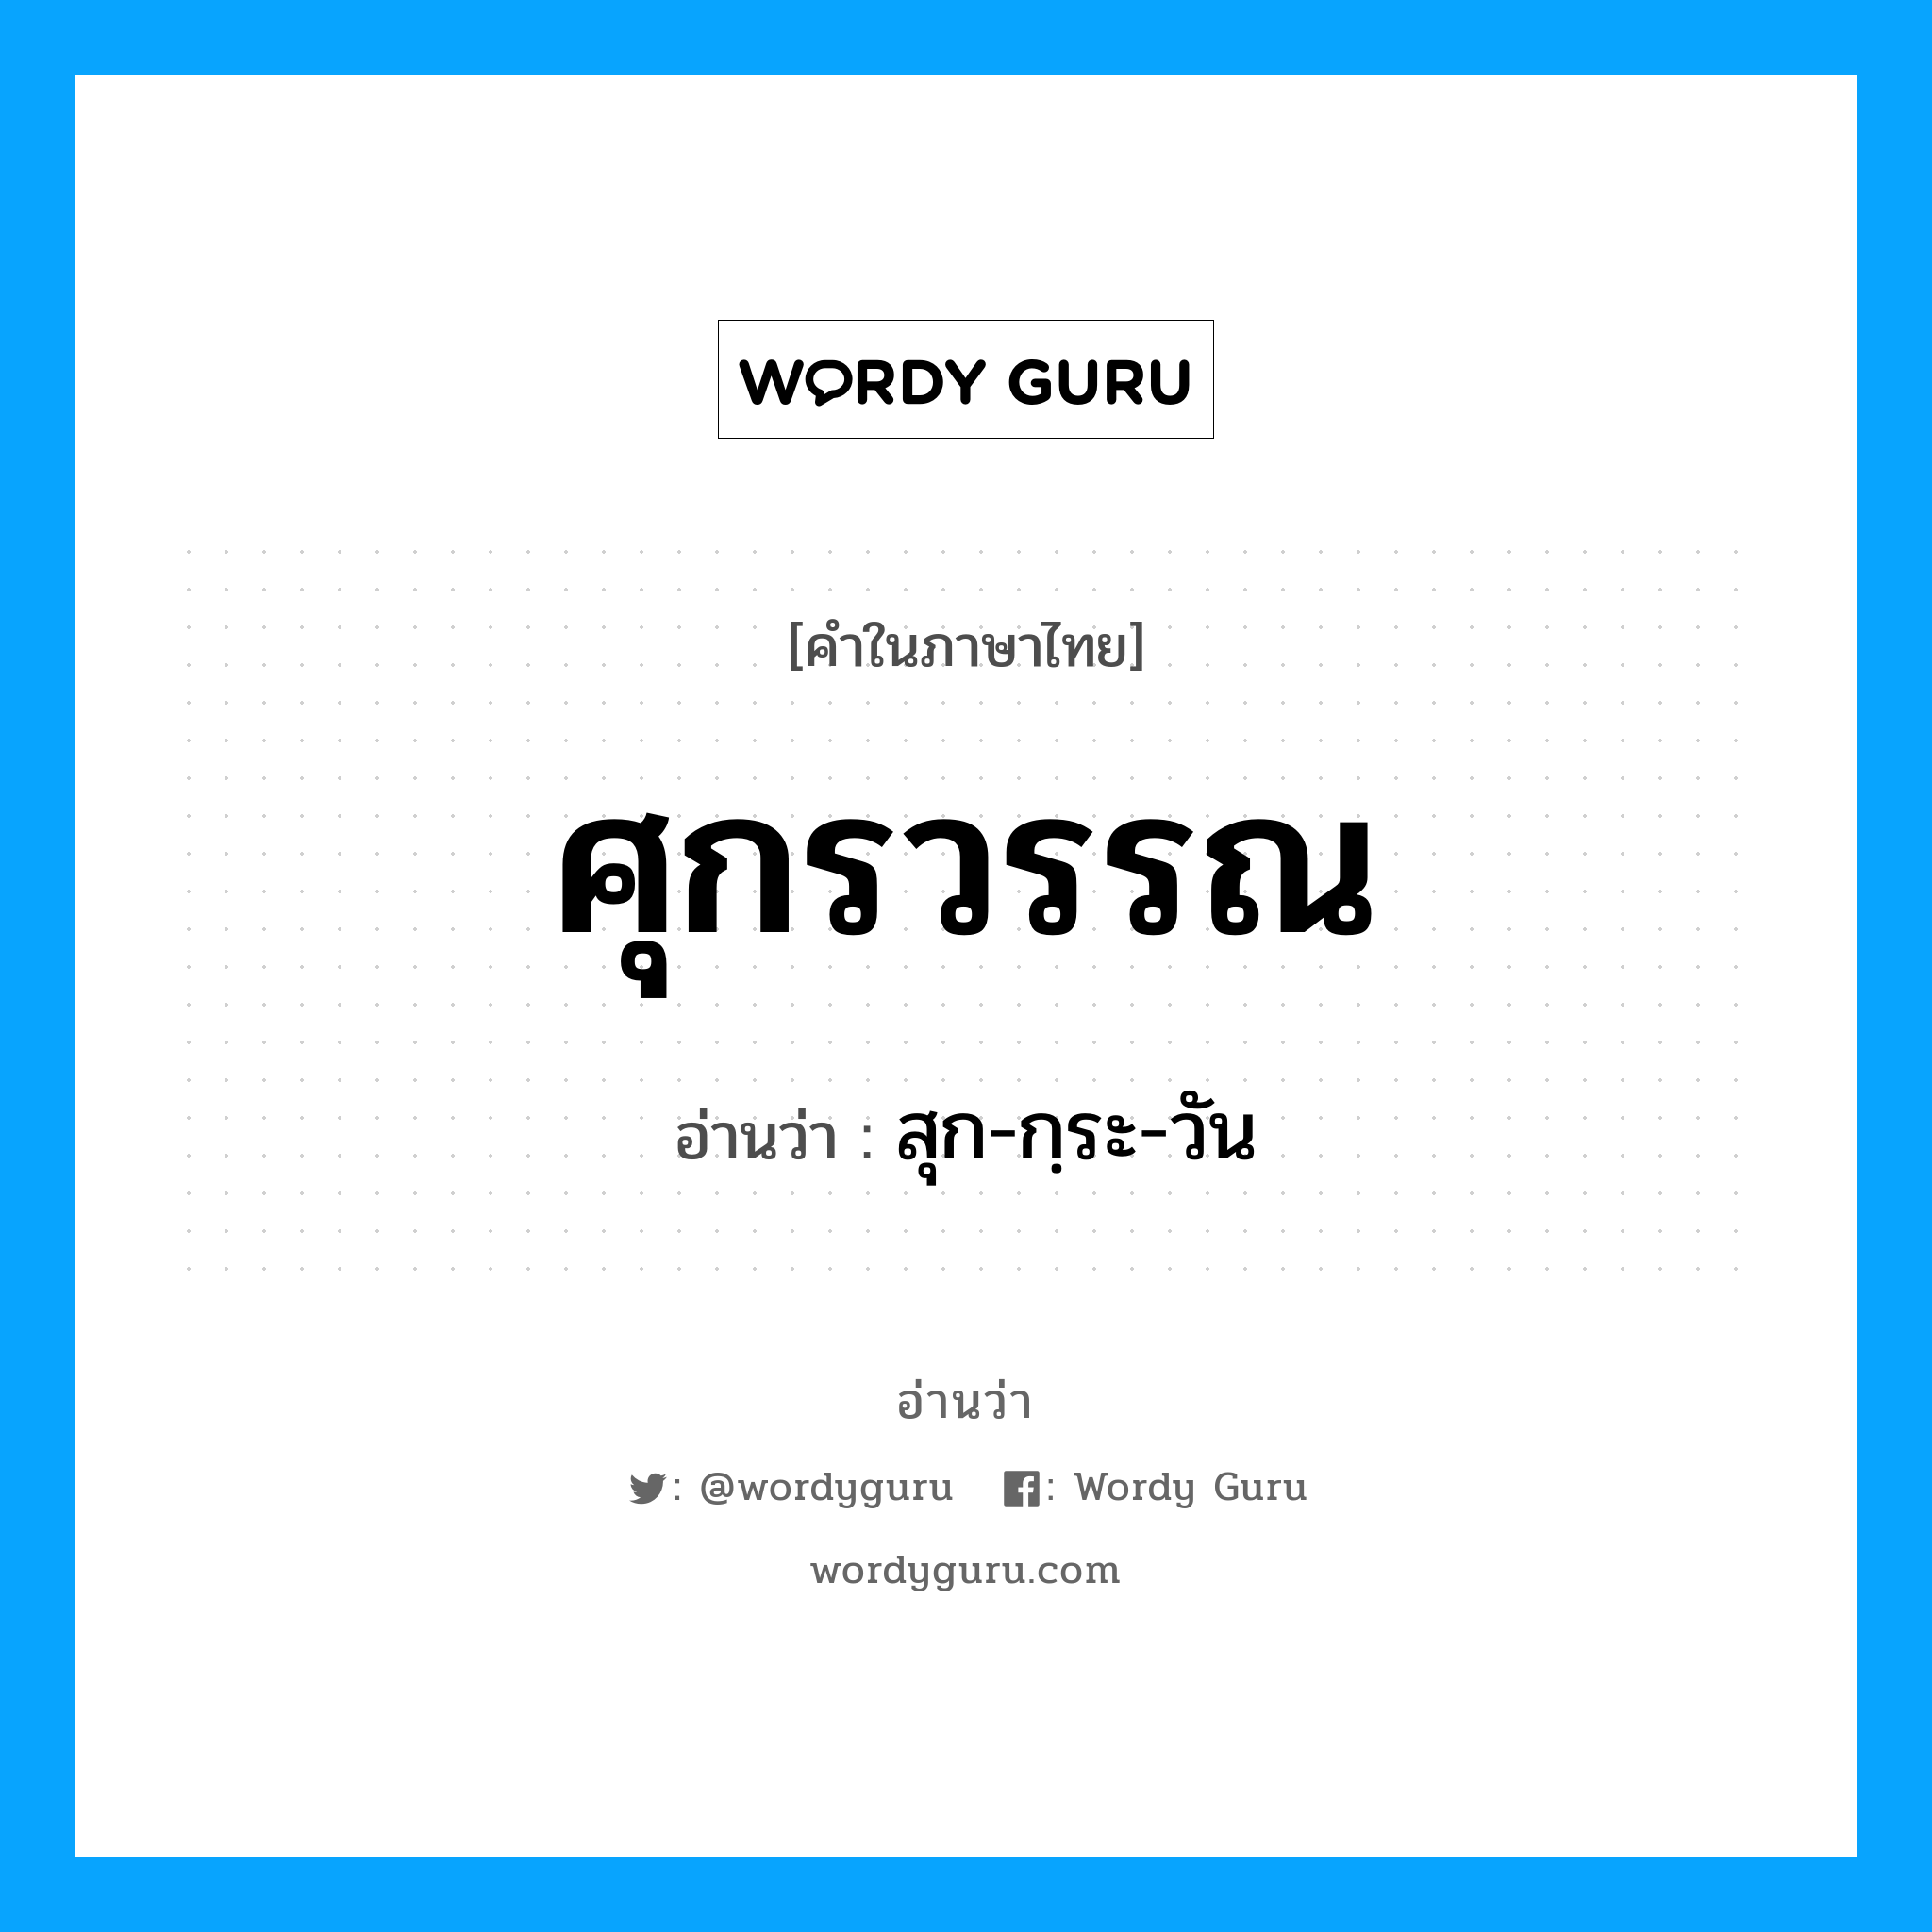 สุก-กฺระ-วัน เป็นคำอ่านของคำไหน?, คำในภาษาไทย สุก-กฺระ-วัน อ่านว่า ศุกรวรรณ